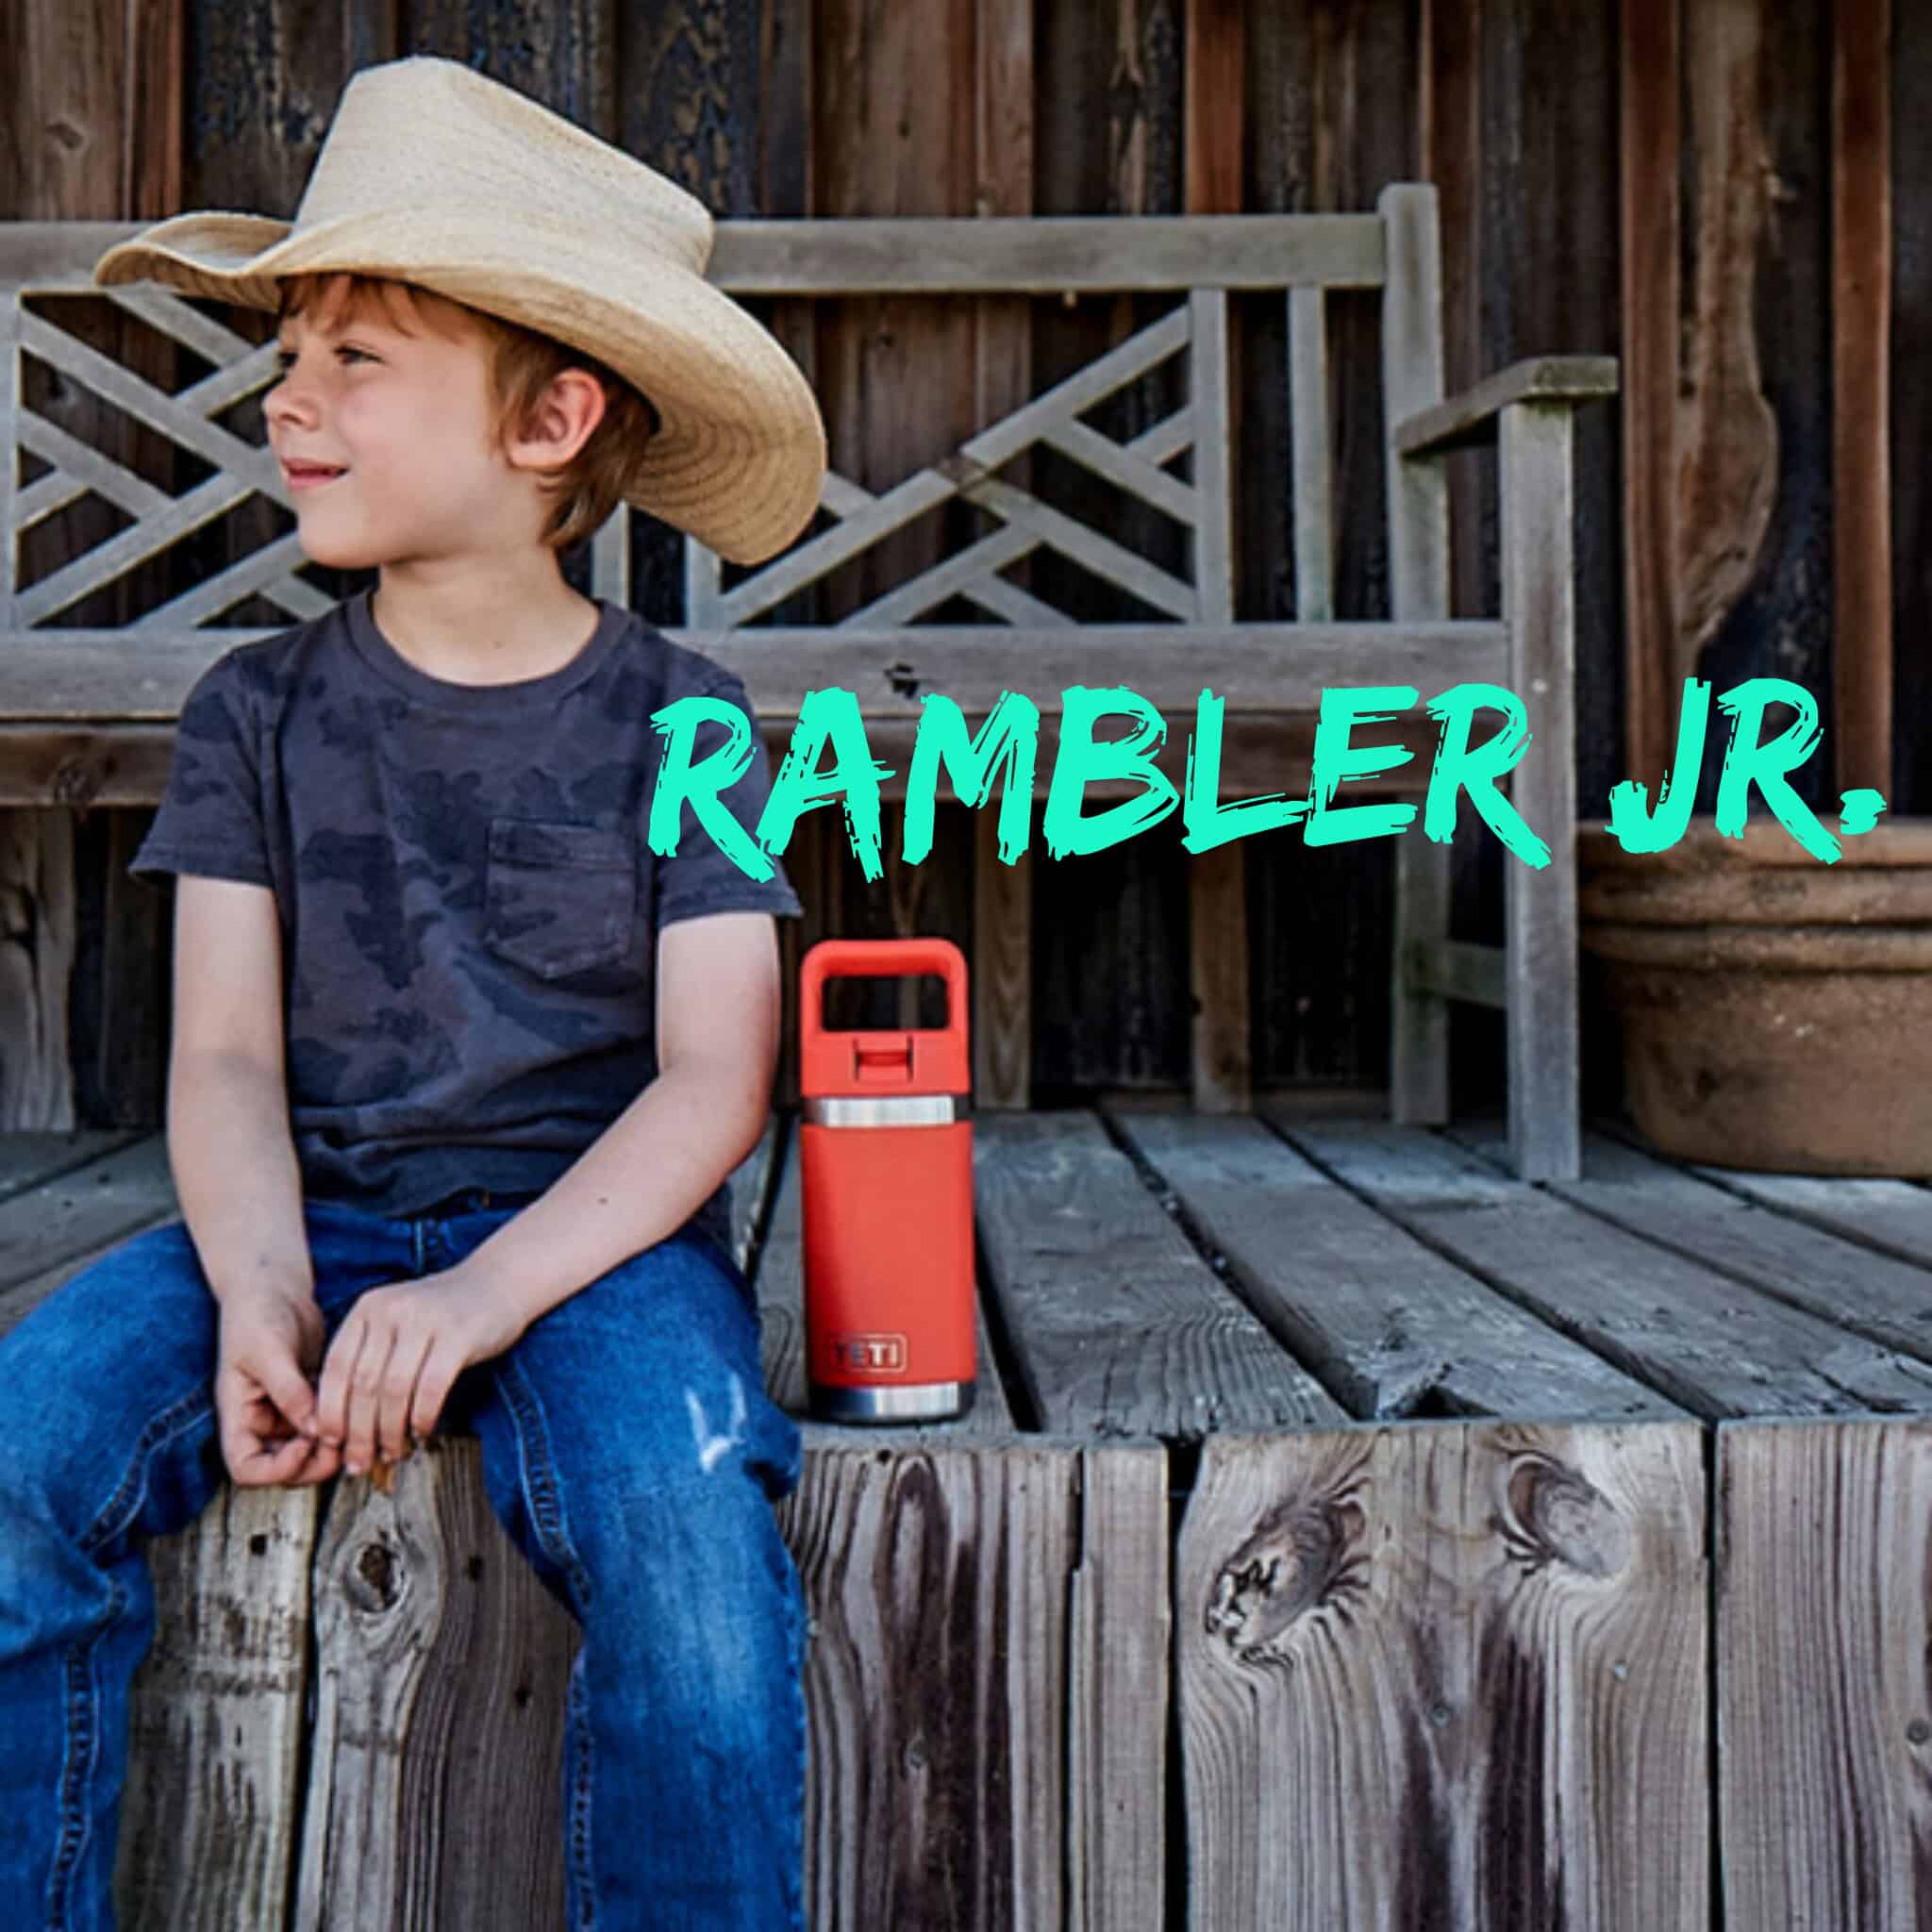 Yeti Rambler Jr Bottle, Kids, Canyon Red, 12 Ounce